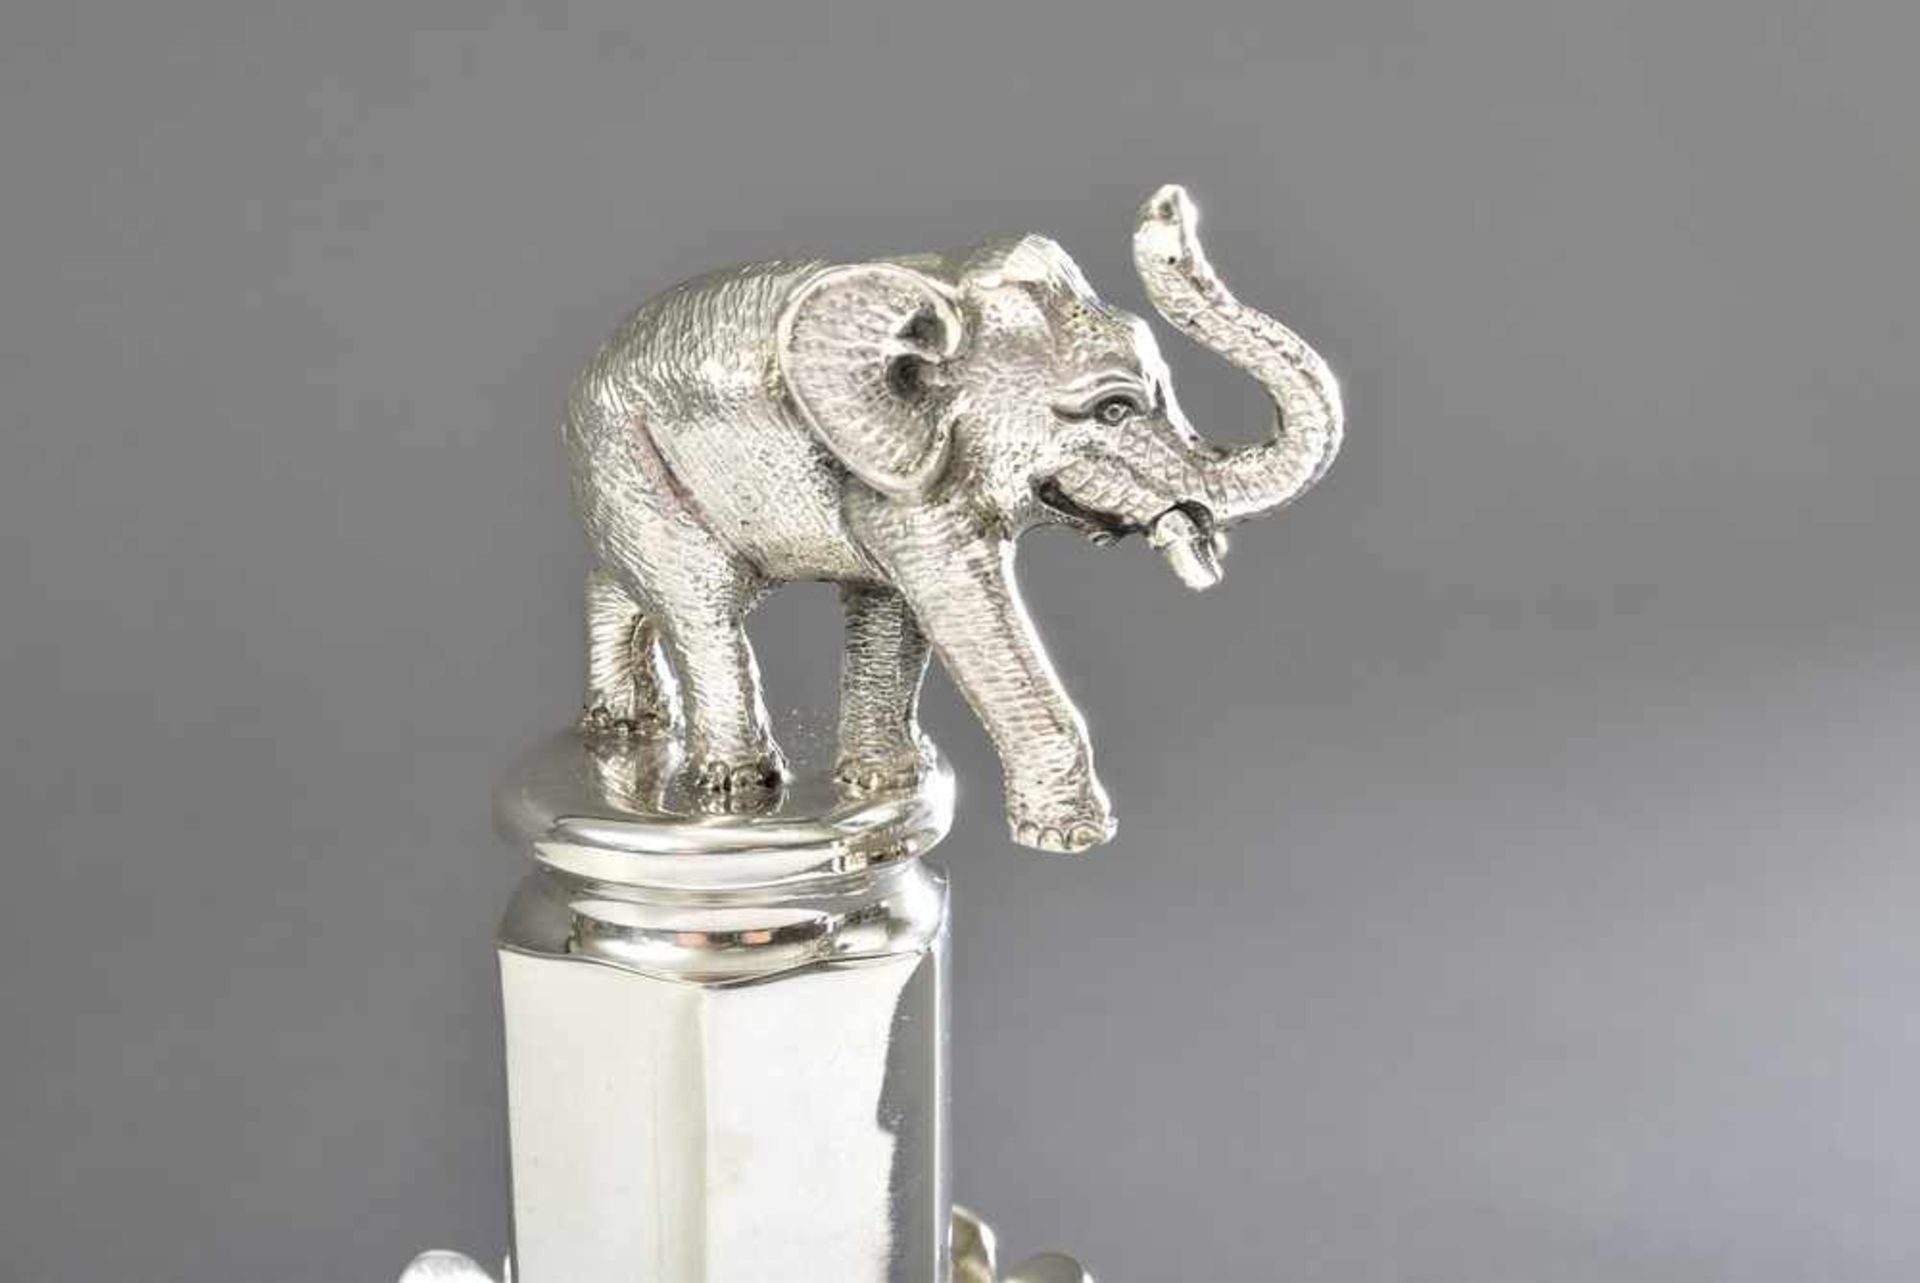 Paliteiro "Elefant auf Säule", Portugal, Silber 835, 229g, H. 15cm - Bild 2 aus 2